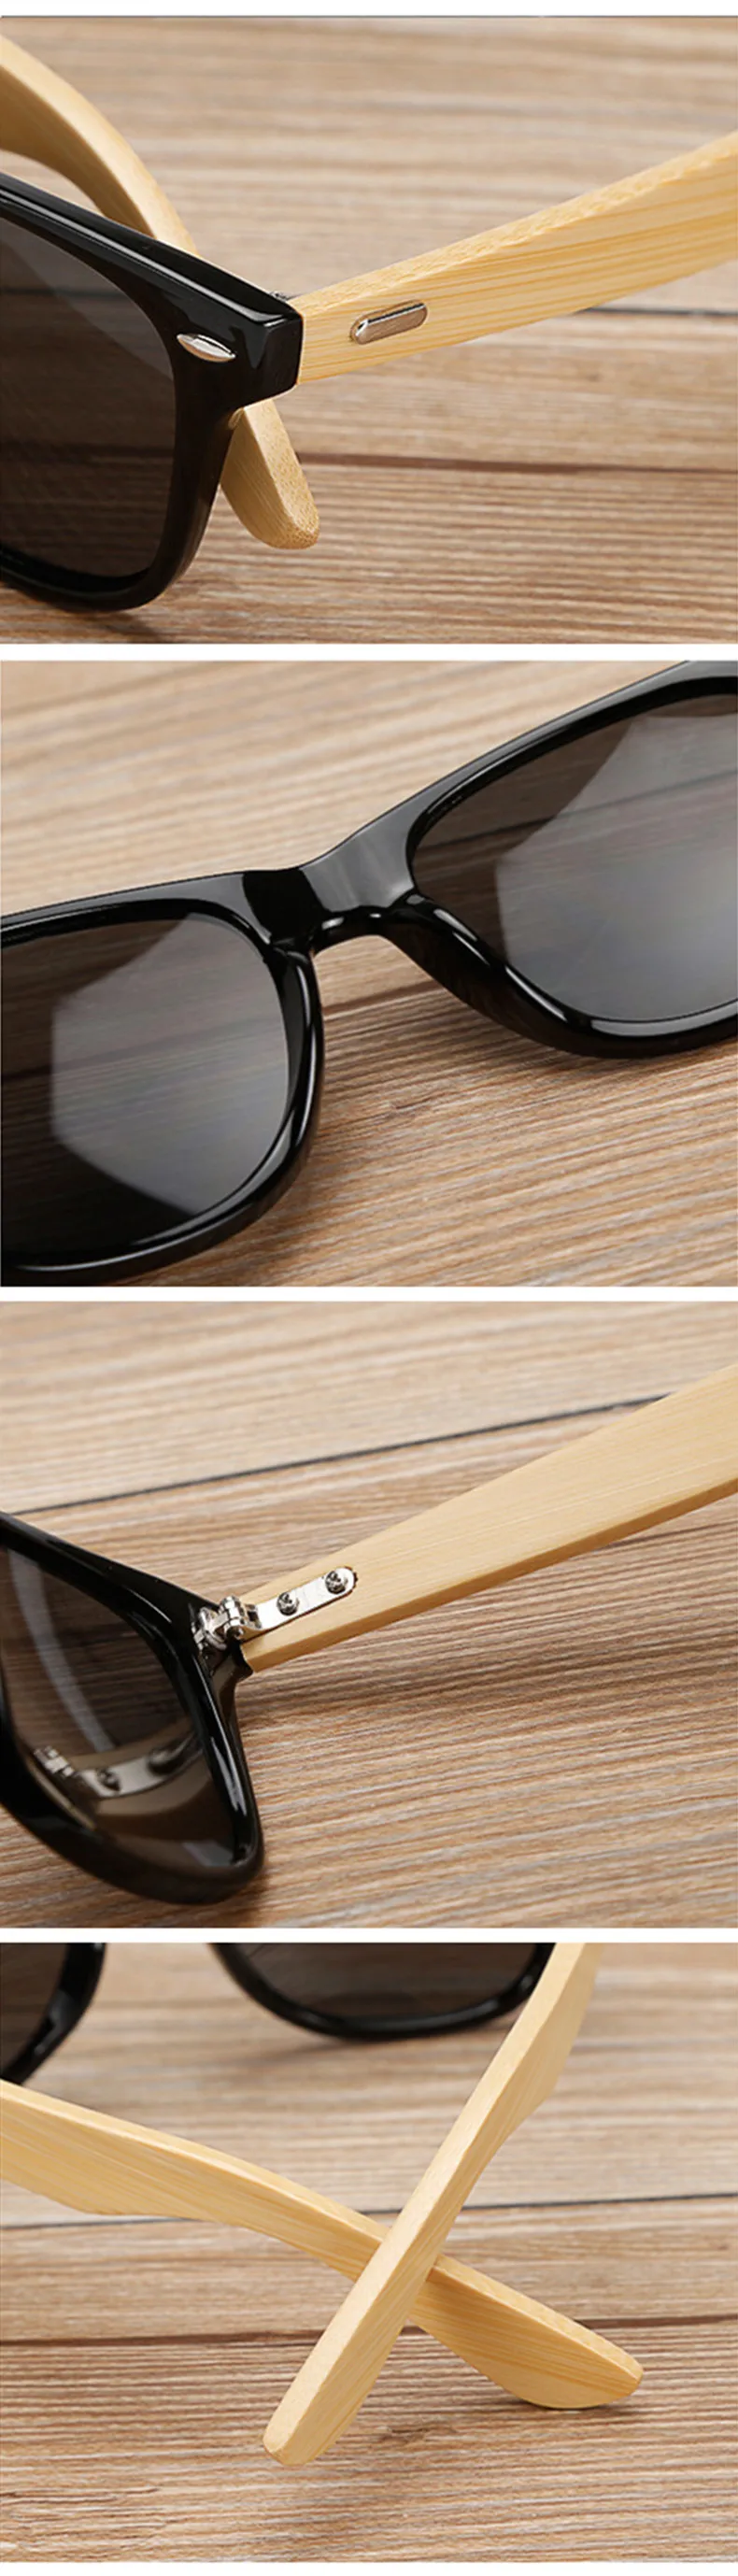 Oulylan модные деревянные солнцезащитные очки для женщин Роскошные брендовые дизайнерские винтажные бамбуковые солнцезащитные очки мужские очки для вождения UV400